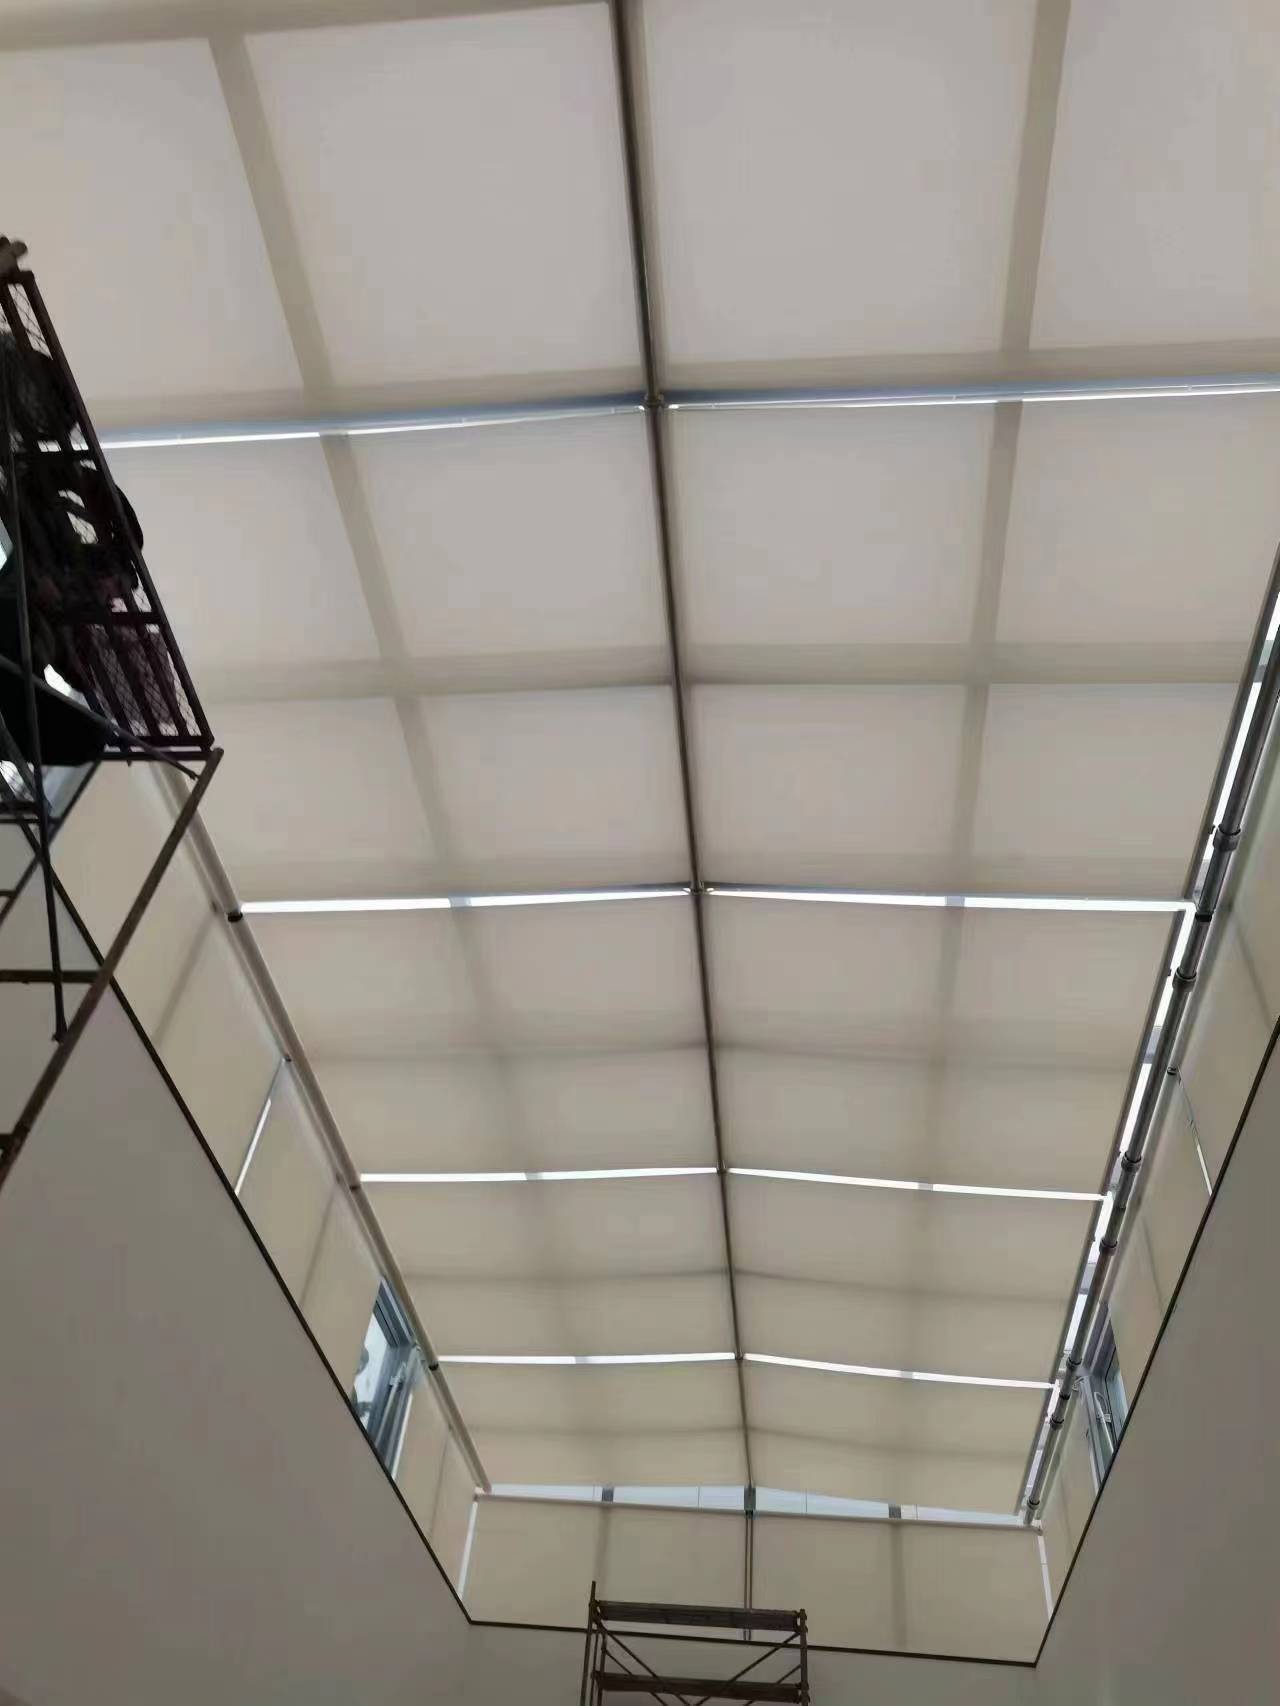 威海市峰火科技园玻璃顶遮阳帘